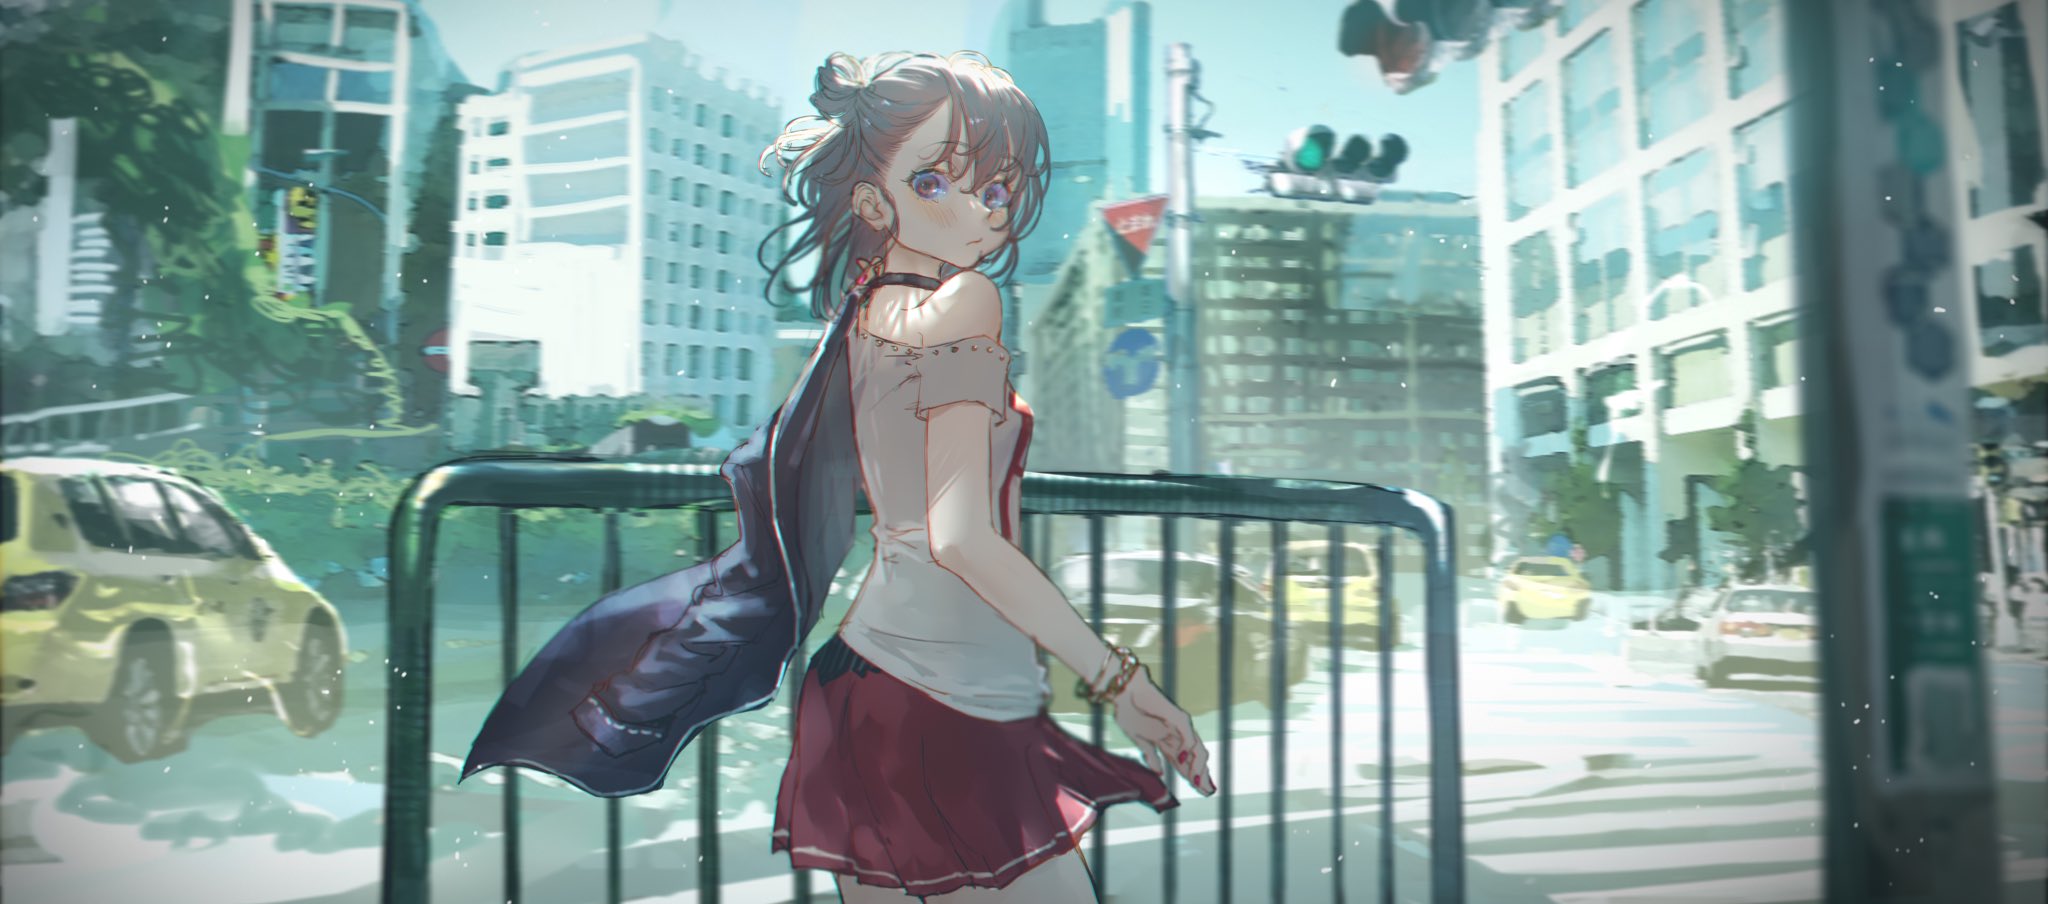 Anime 2048x904 anime anime girls digital art artwork 2D portrait Roki Virtual Youtuber street